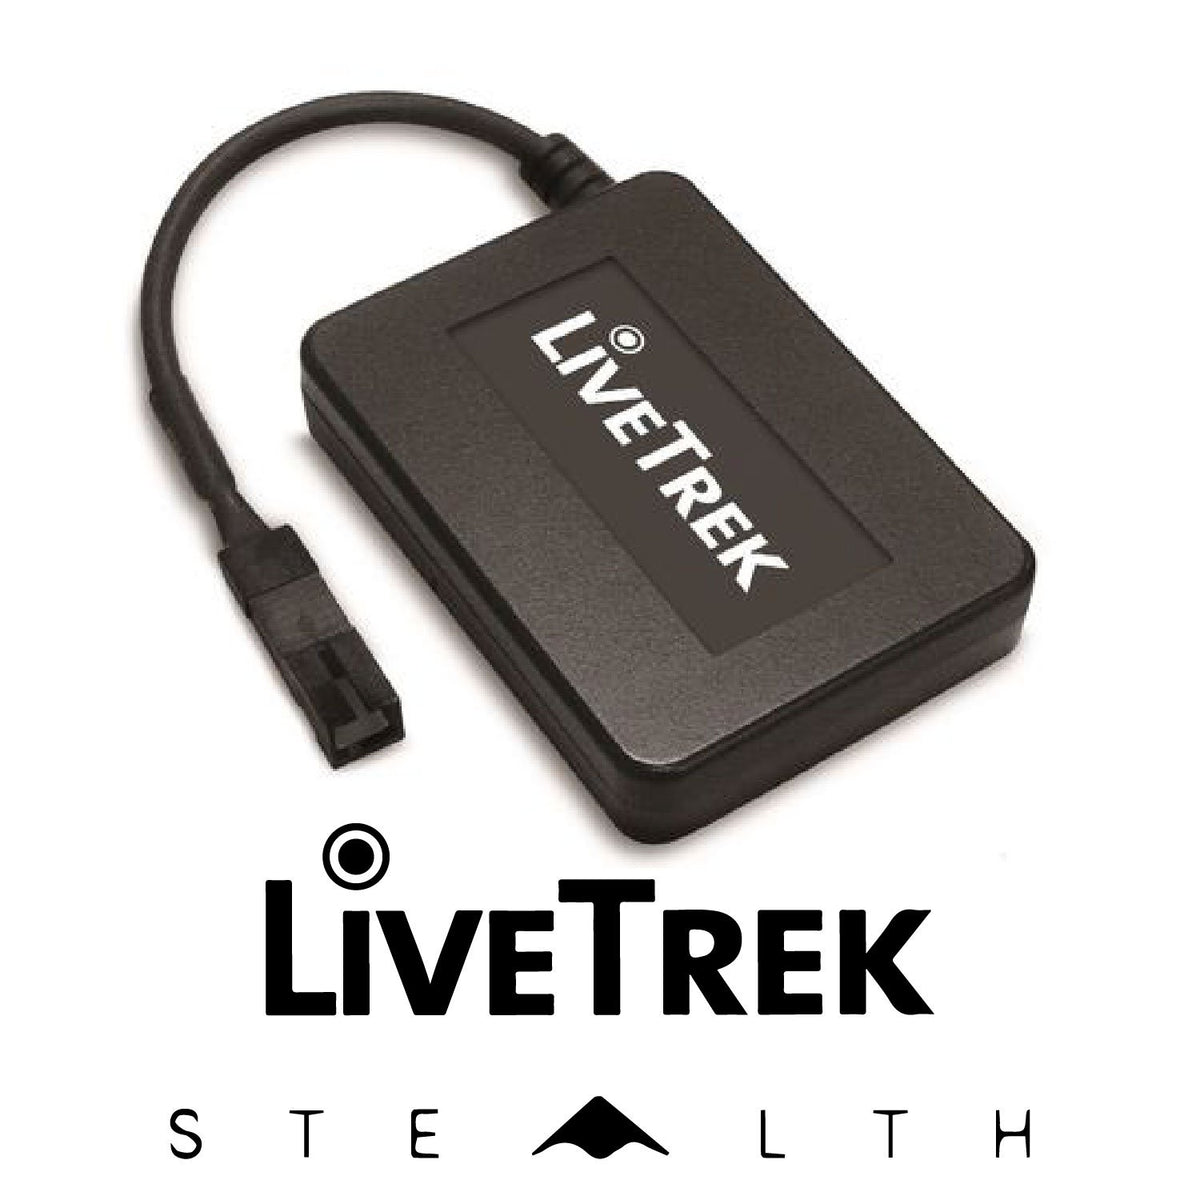 Livetrek Stealth 3G